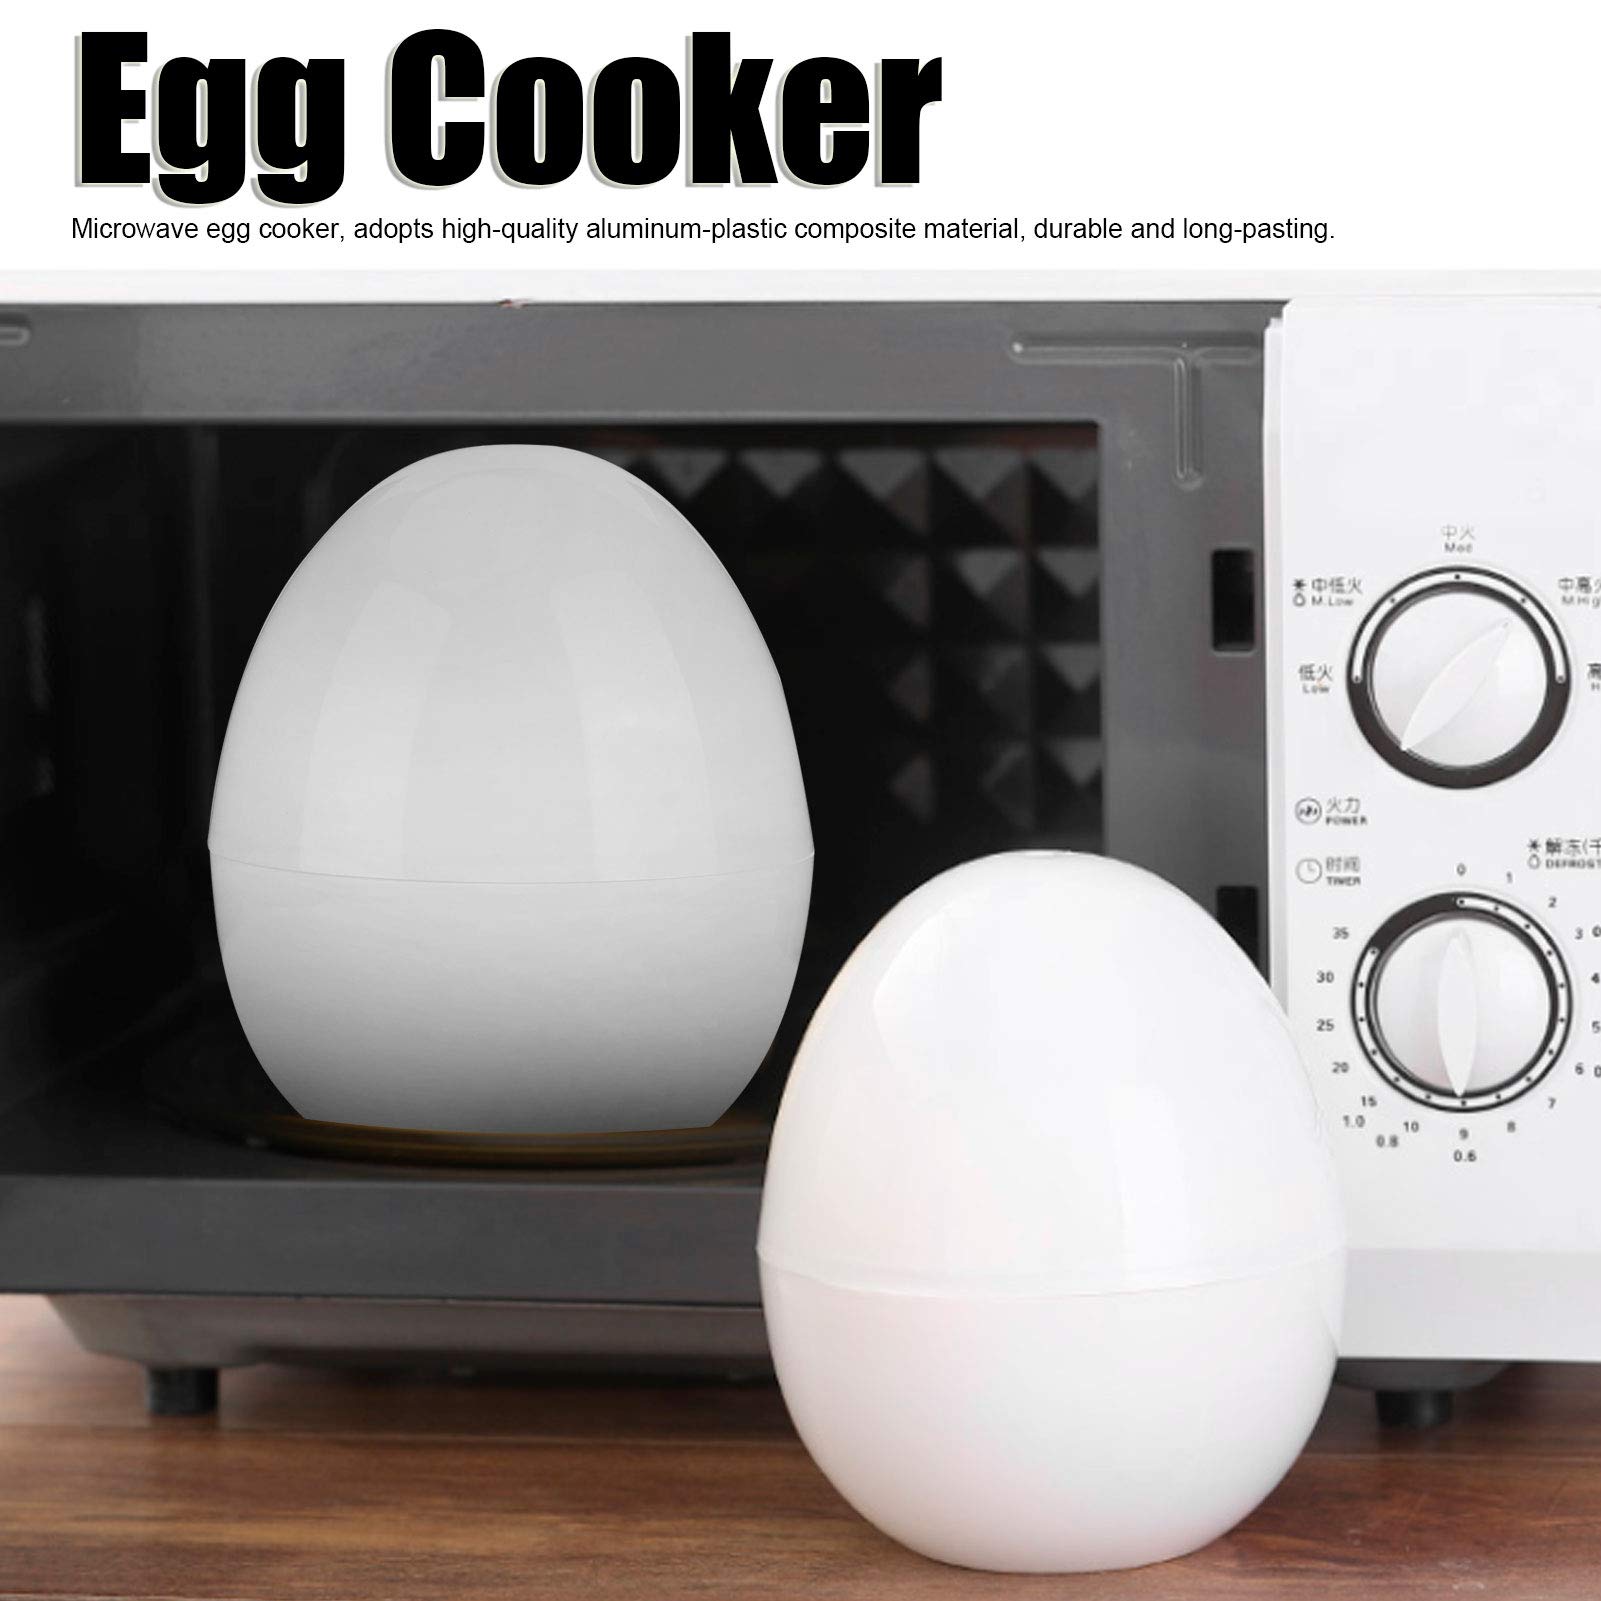 Egg Cooker, Microwave Egg Boiler, Oven Egg Cooker, 4 Eggs Multifunctional Egg Container Egg Steamer Kitchen Accessories